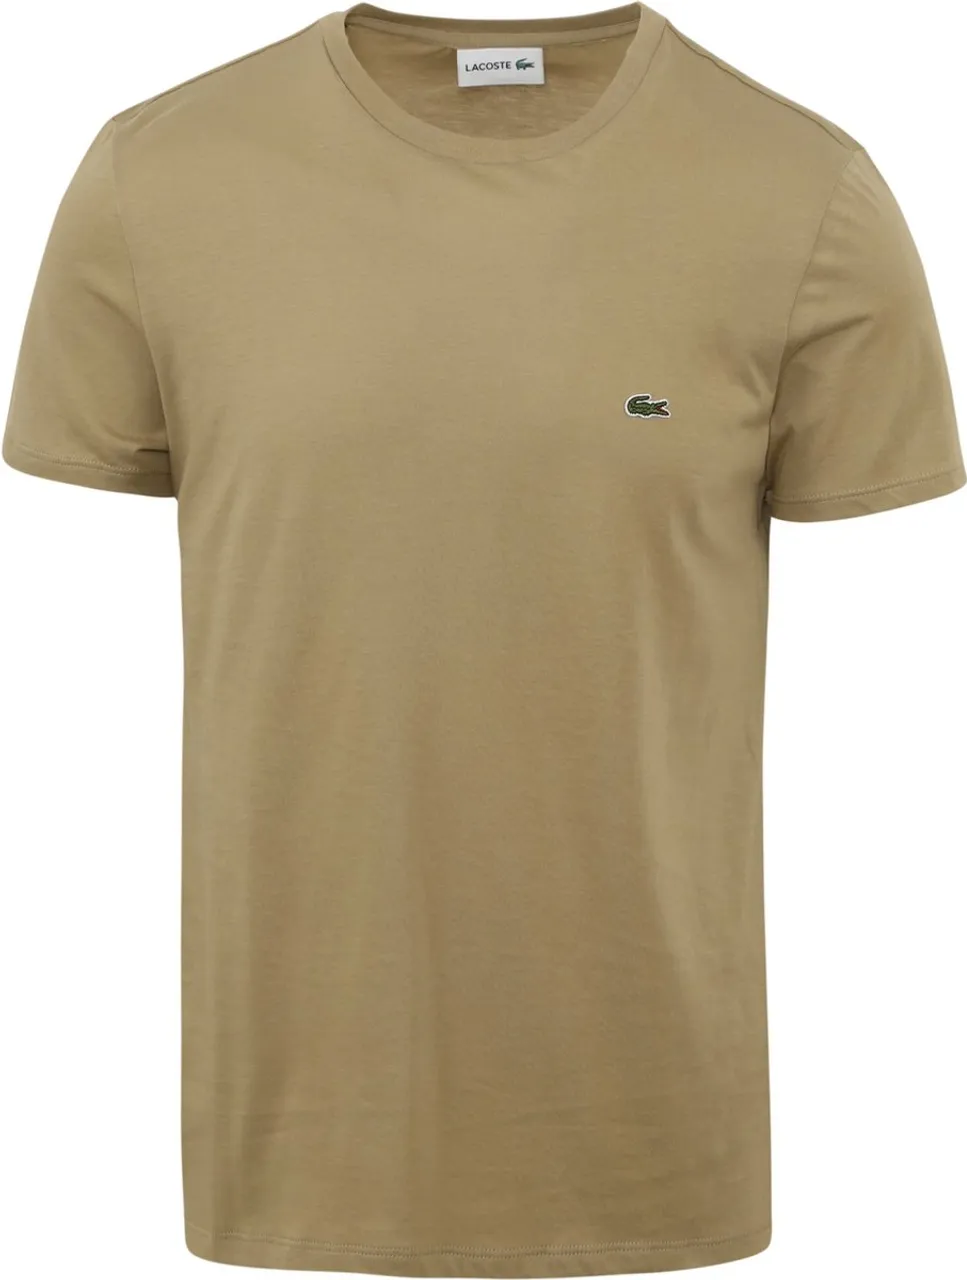 Lacoste - T-Shirt Bruin - Heren